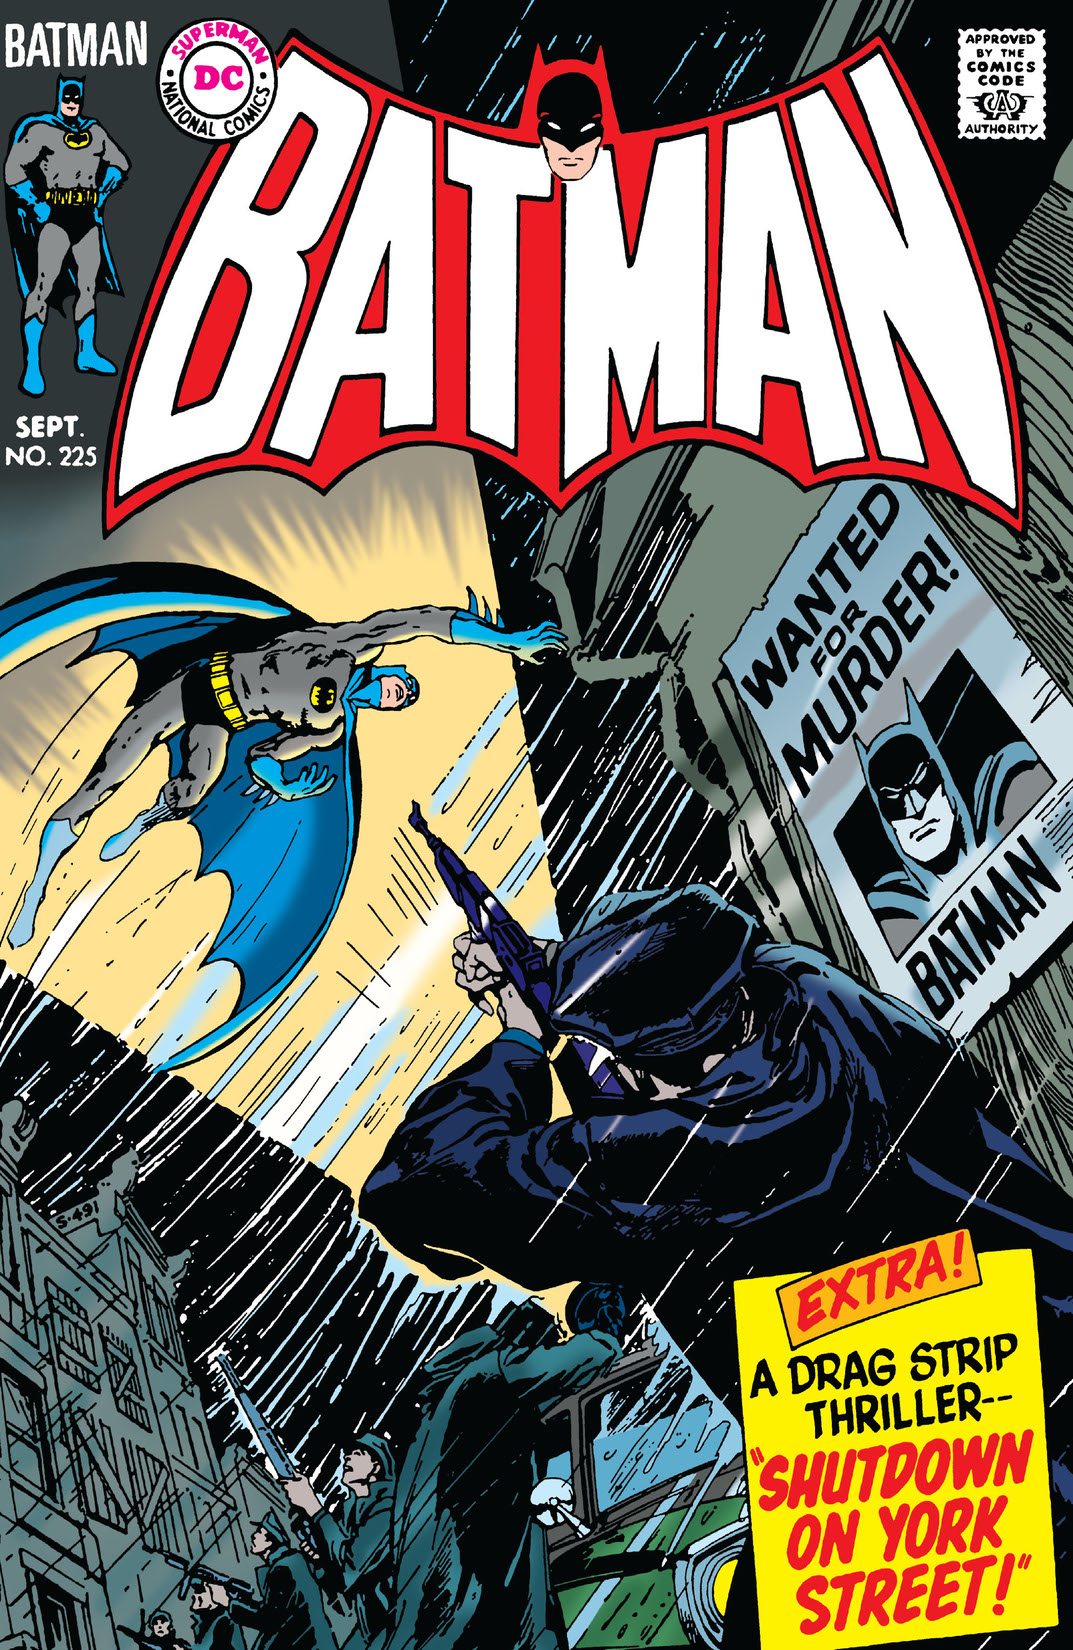 Batman (1940-) #225 preview images